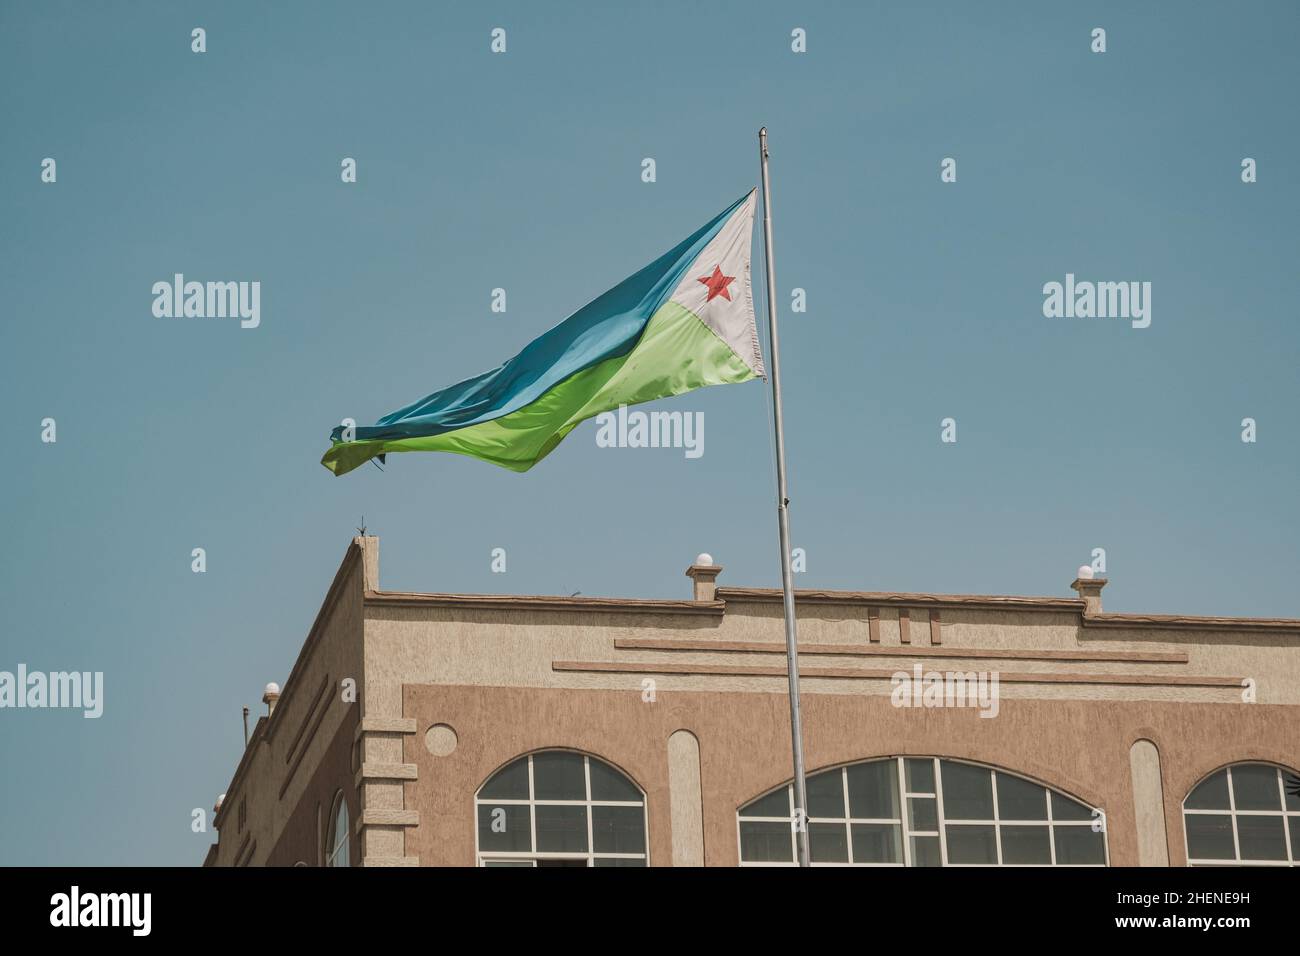 Djibouti, Djibouti - May 21, 2021: Djibouti flag waving in Djibouti. Editorial shot in Djibouti. Stock Photo